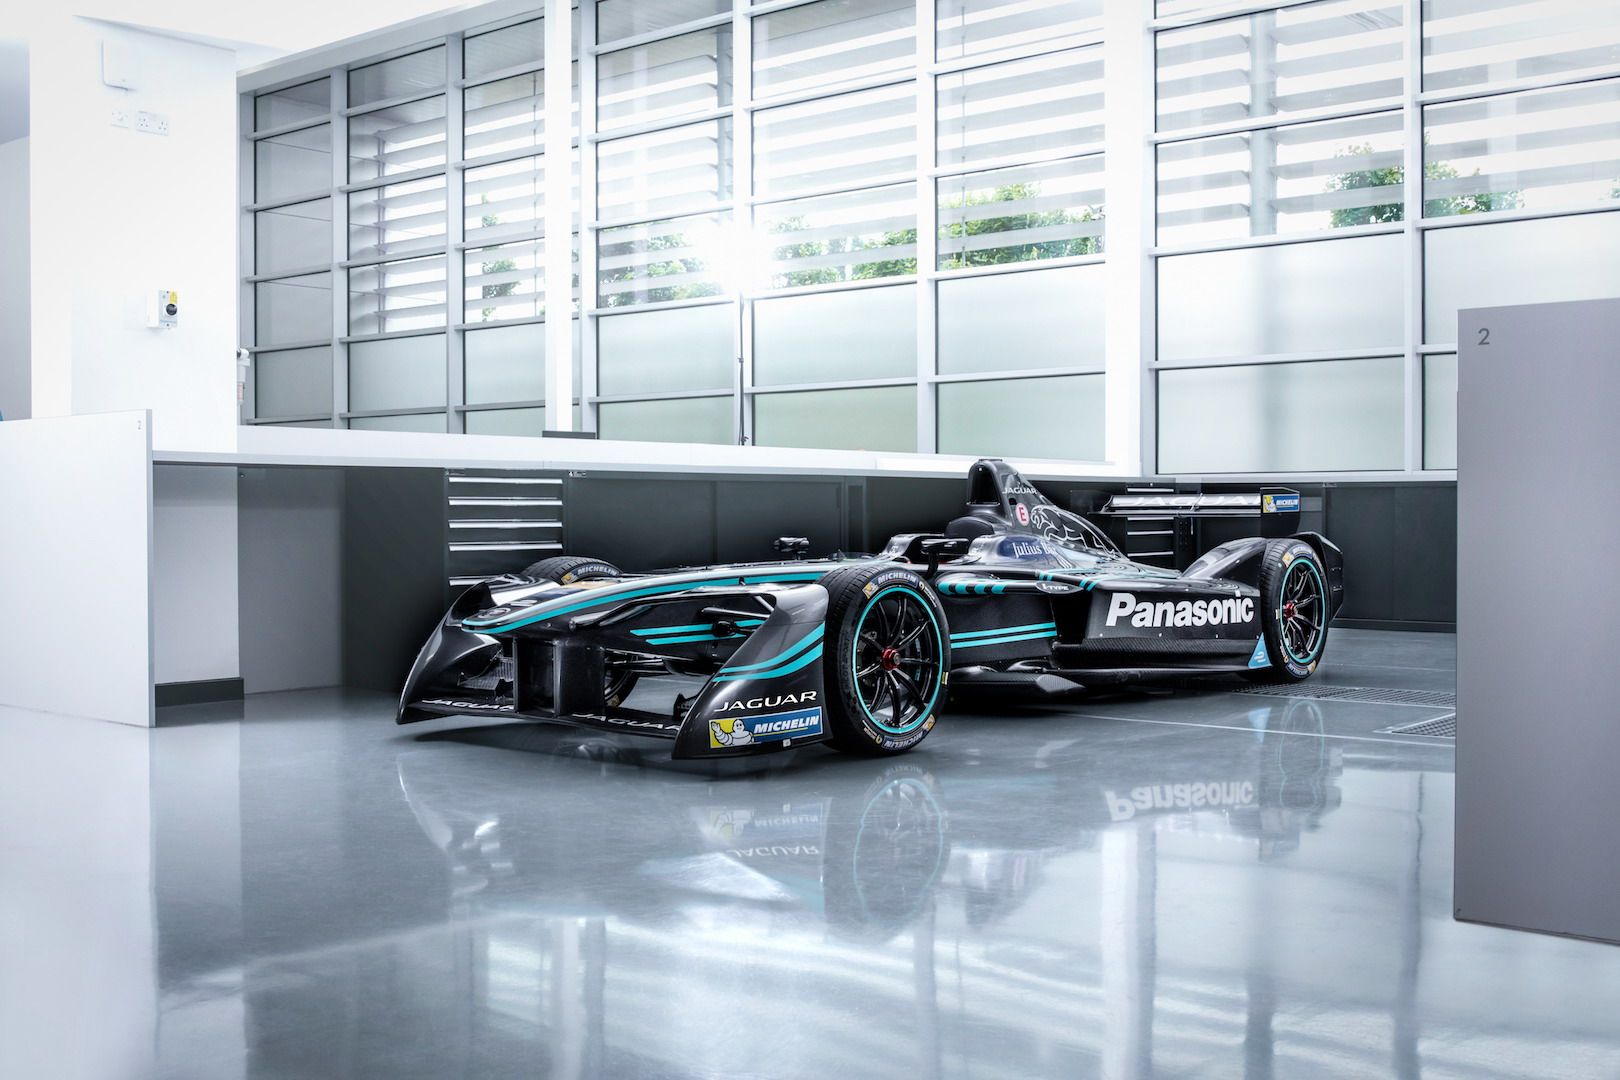 2016 Jaguar I-Type Formula E Race Car